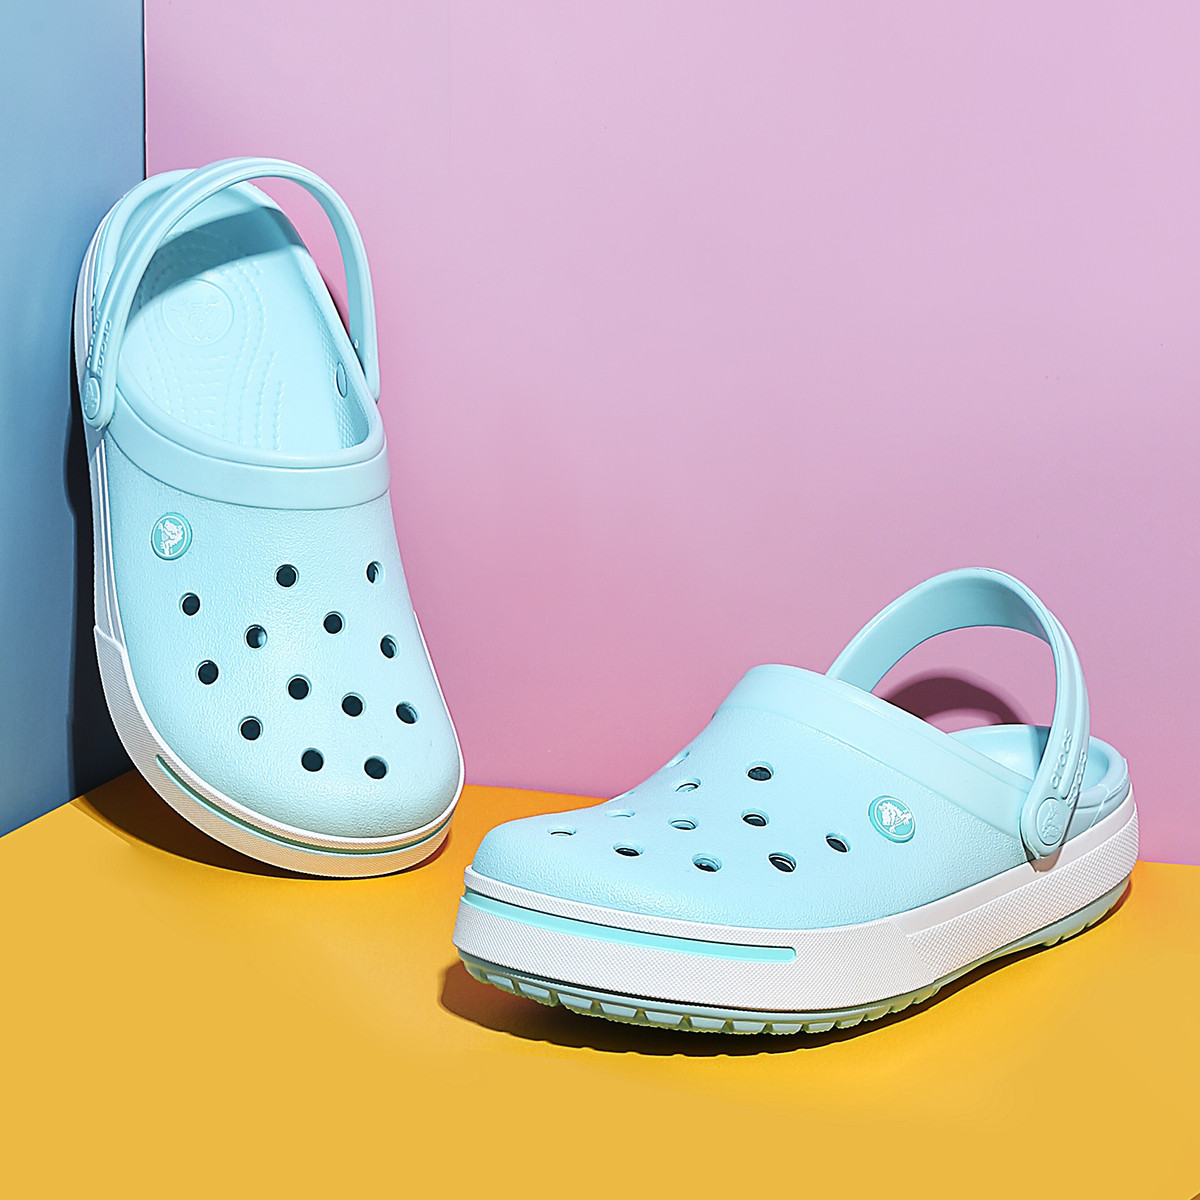 Crocs 为全球品牌代言人杨幂推出定制款「幂风洞洞鞋」 – NOWRE现客